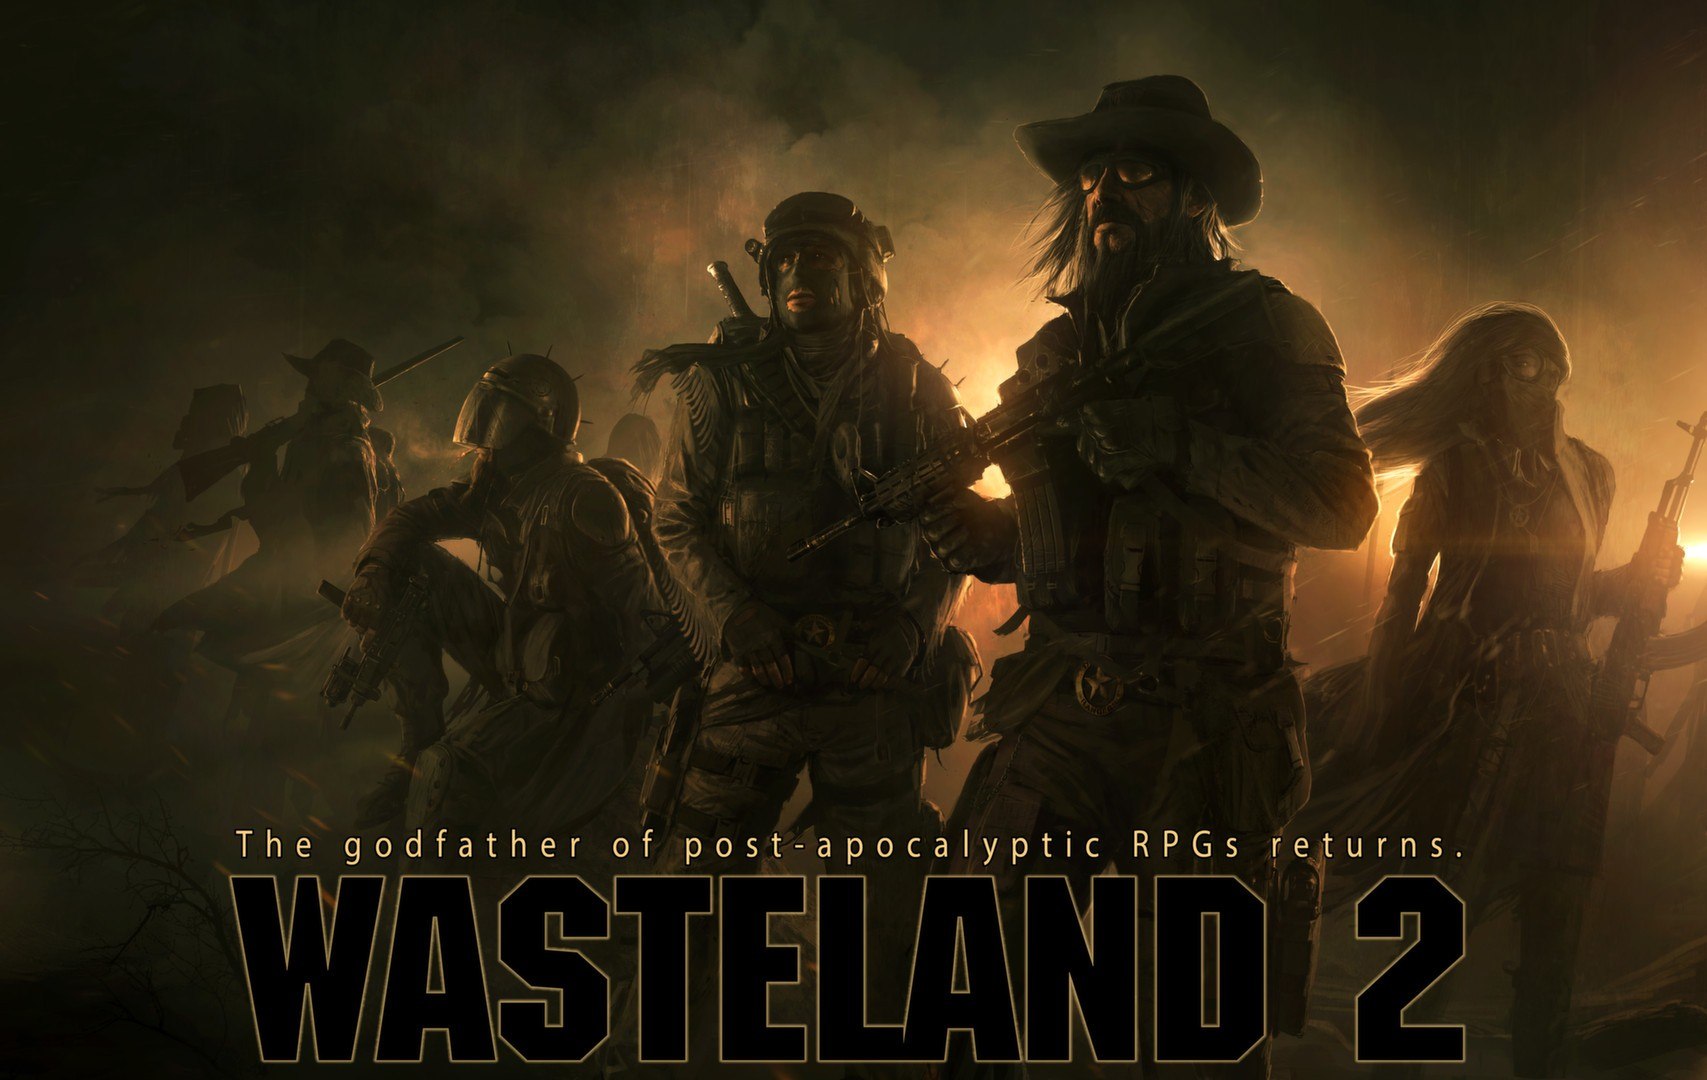 [$ 11.19] Wasteland 2: Director's Cut - Classic Edition Steam CD Key